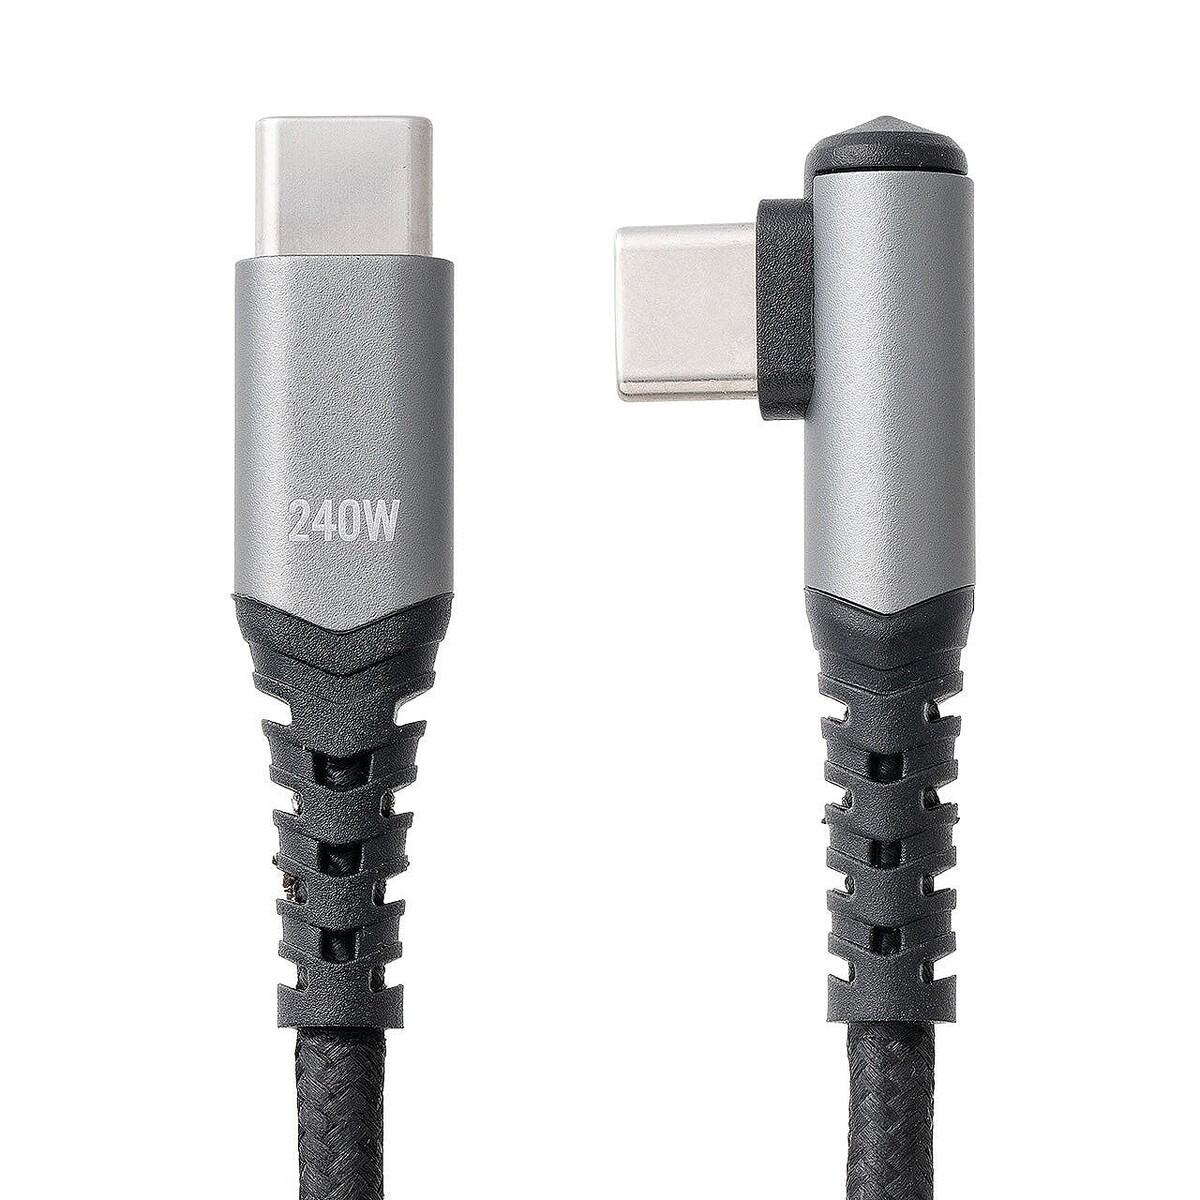 柔らかいのに絡みにくいL字USB-Cケーブル、PD240W対応とPD100W対応の2種